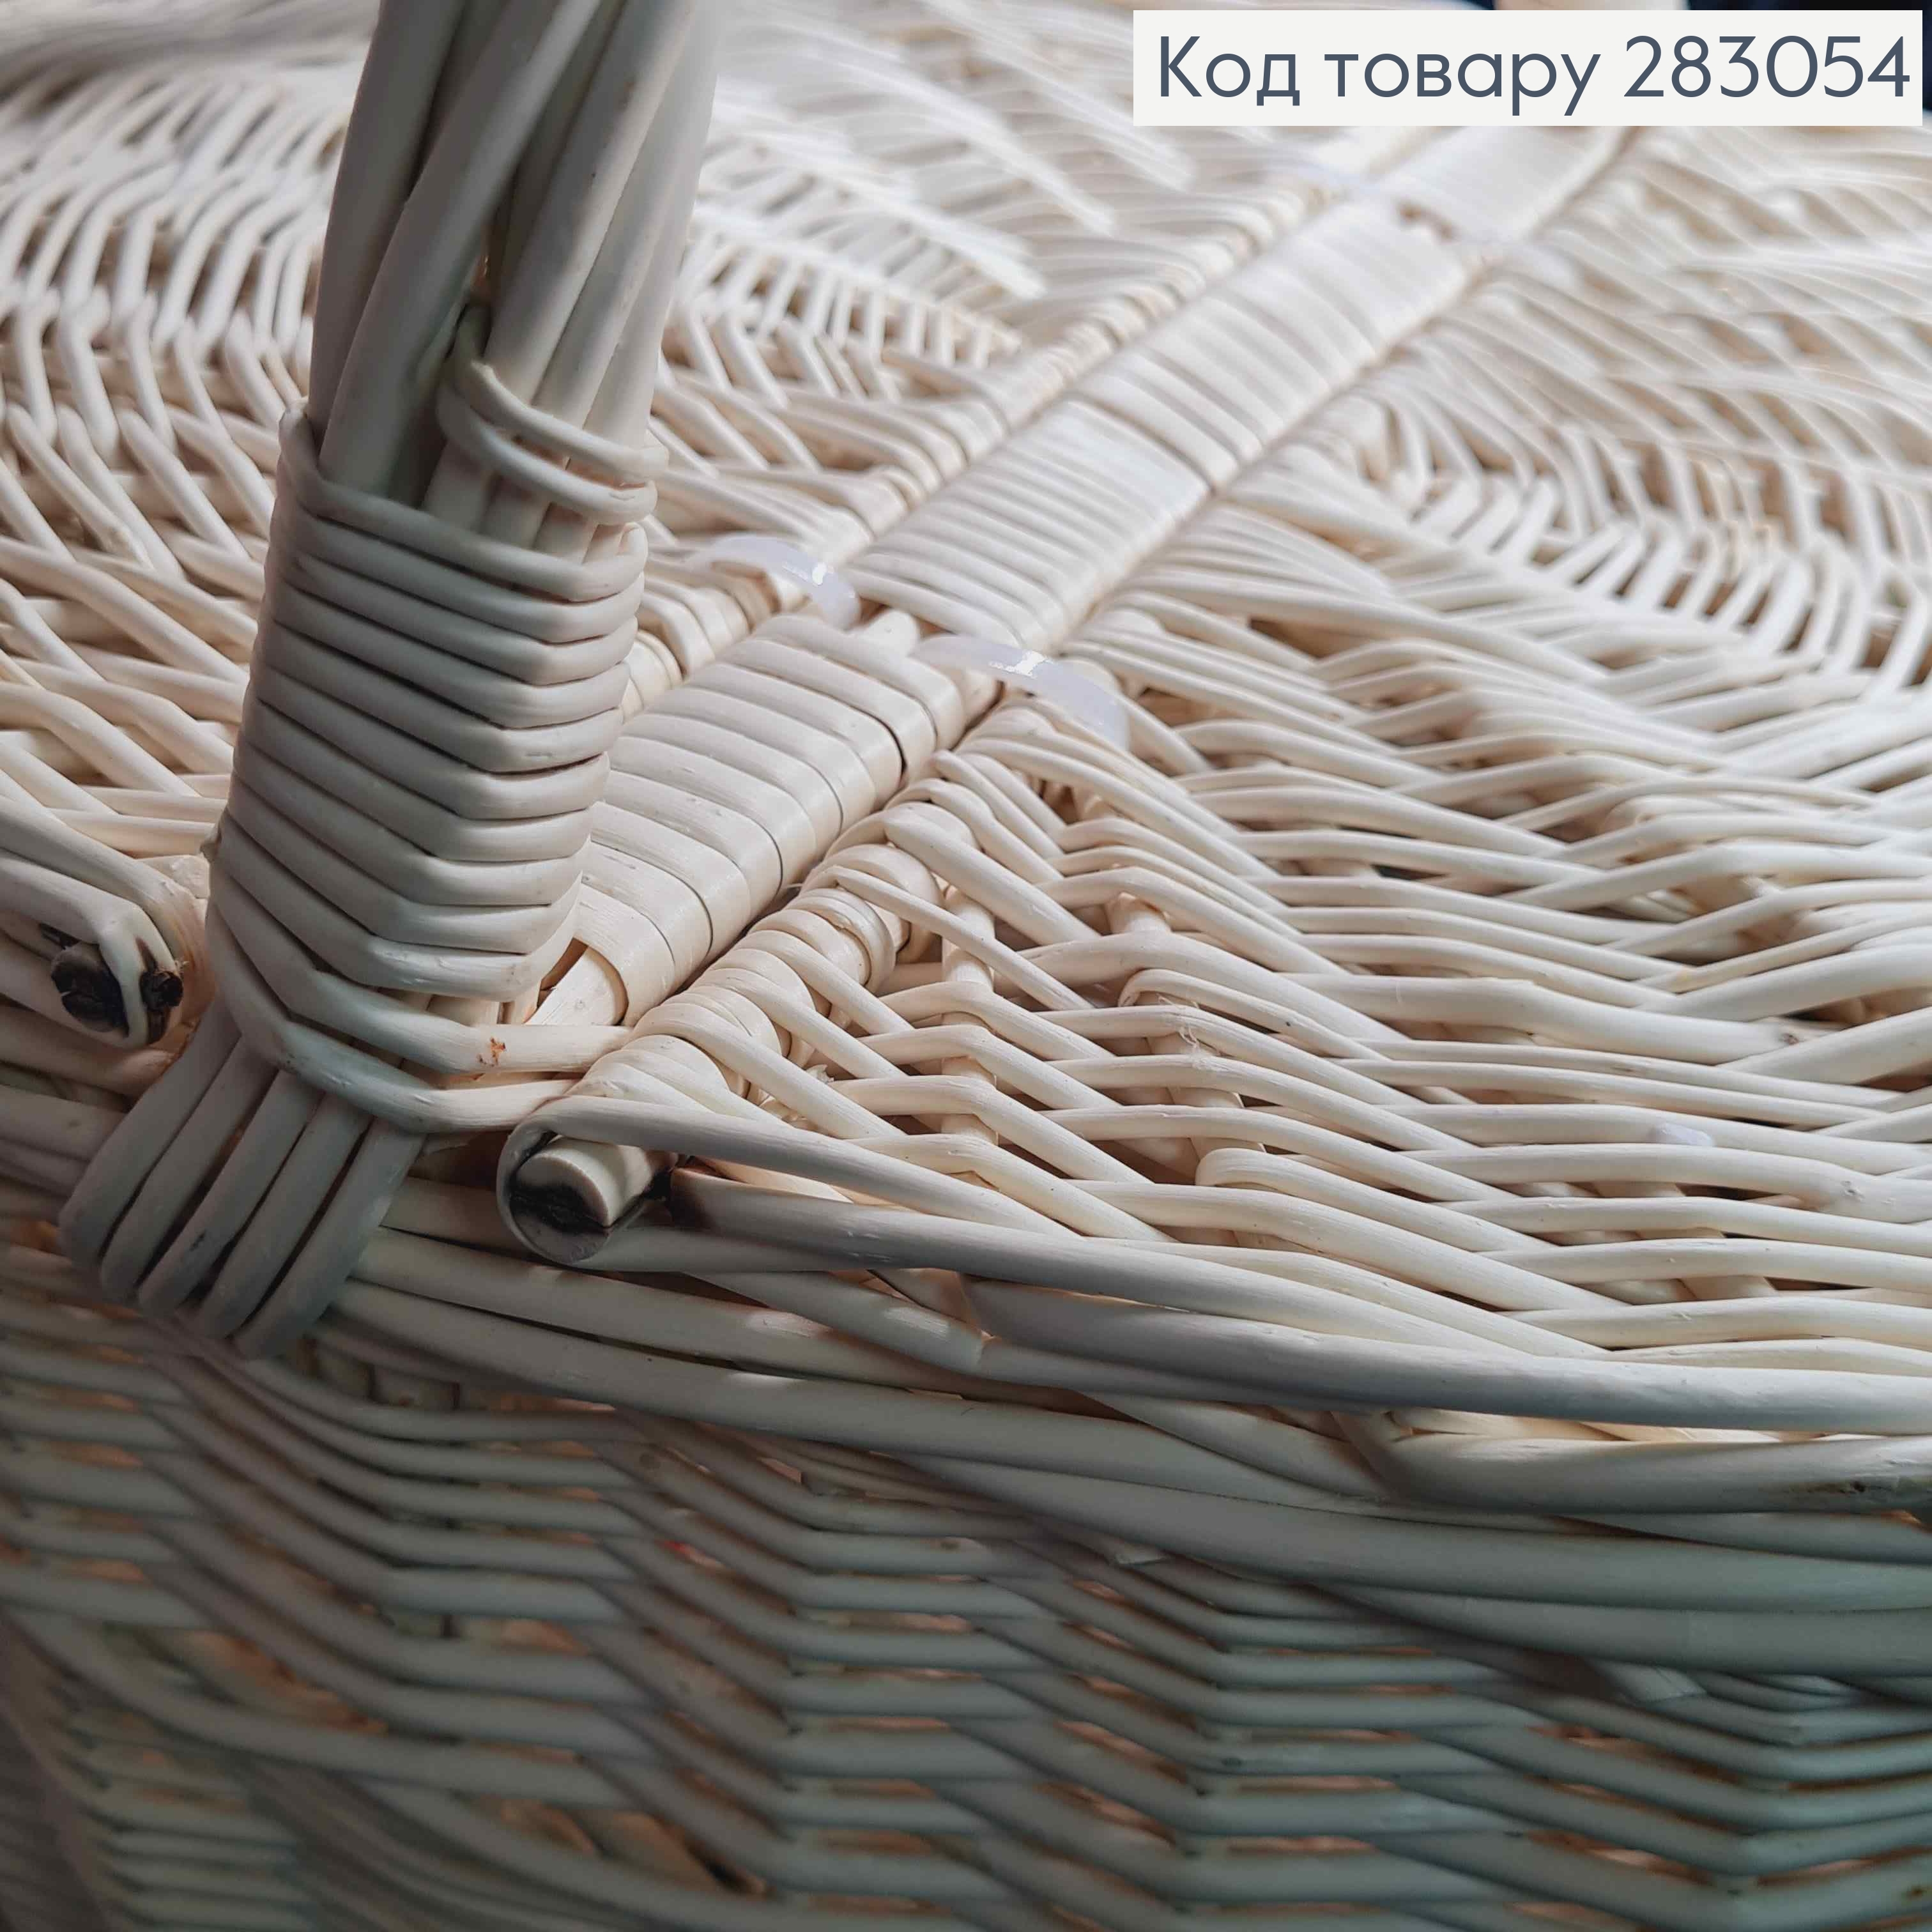 Корзина плетеная для пикника с крышкой ВЫБЕЛЕНА (глубина 21см, длина 40, ширина 30см) ПОЛЬША 283054 фото 2